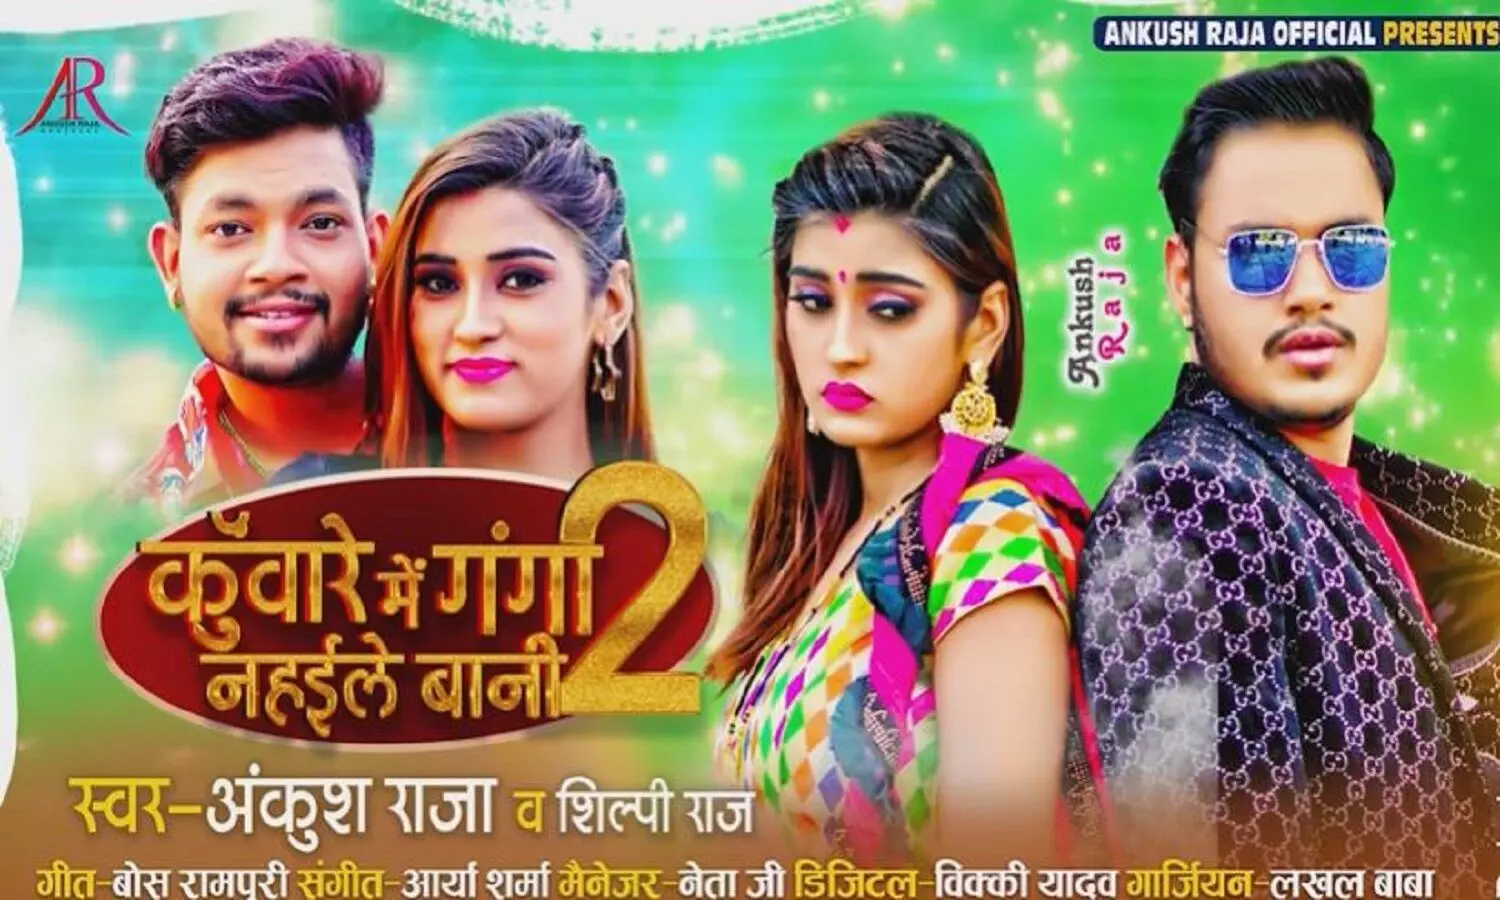 Latest Bhojpuri Song : कुंवारे में गंगा नहईले बानी-2 रिलीज, कुछ ही घंटों में मिलें लाखों Views